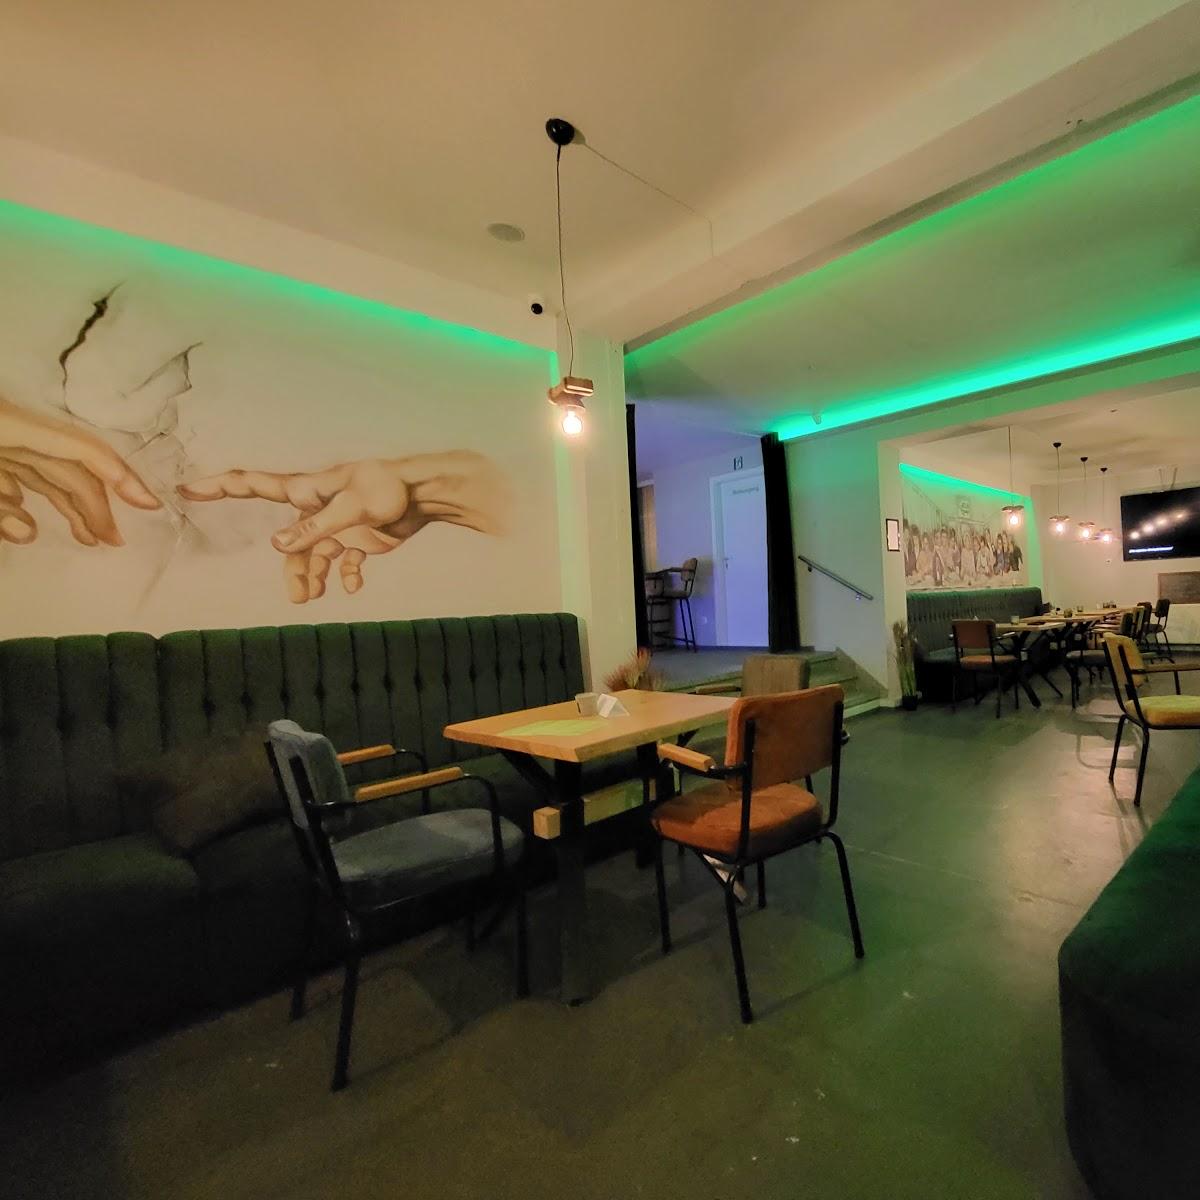 Restaurant "Green Lounge" in Thannhausen